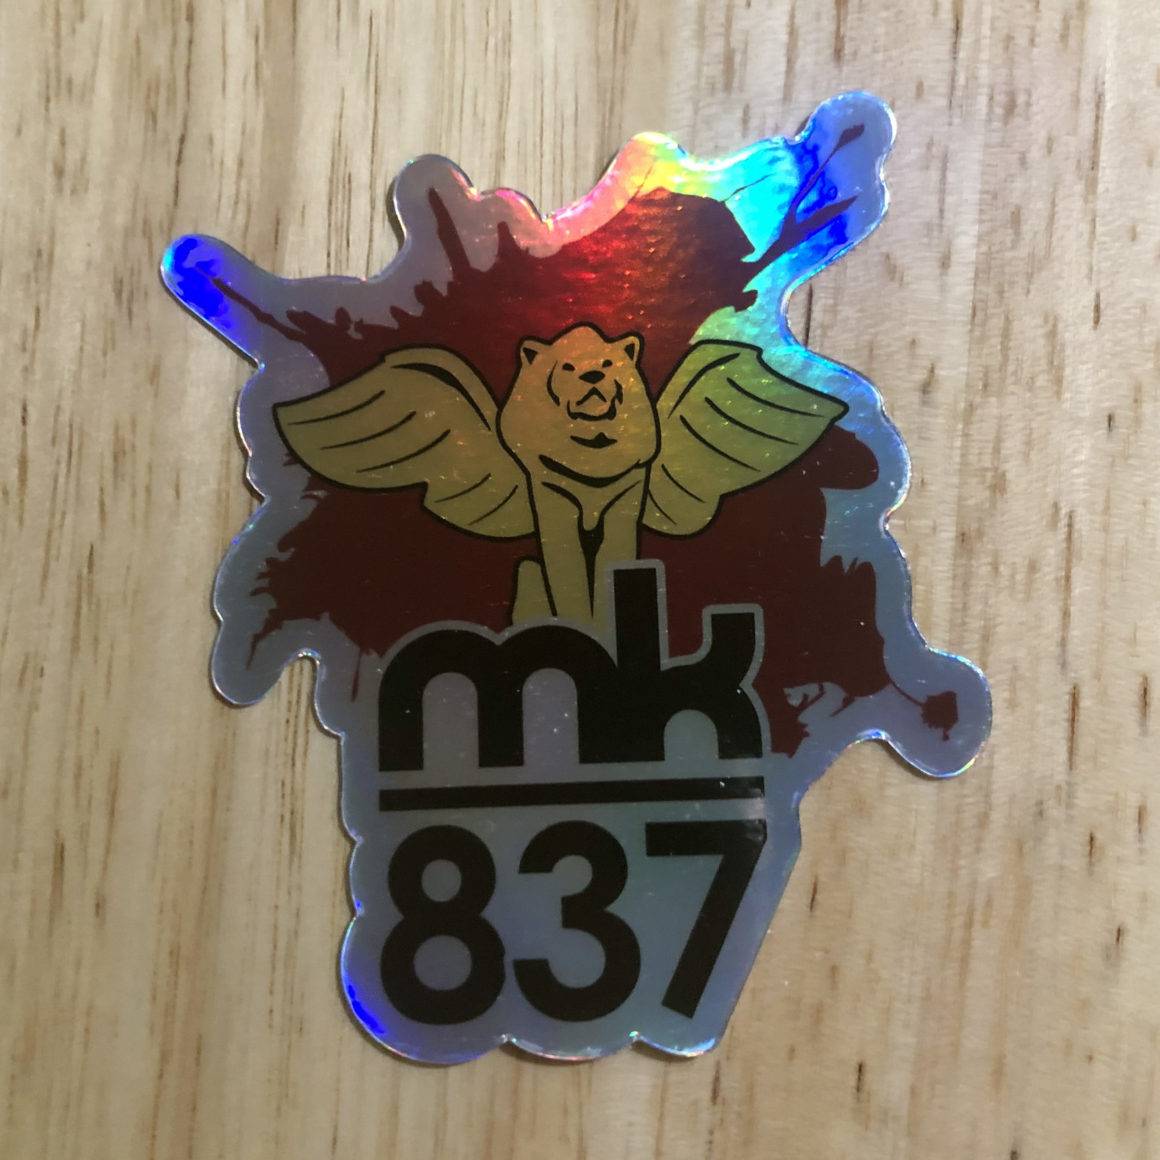 MK837 Holographic Sticker